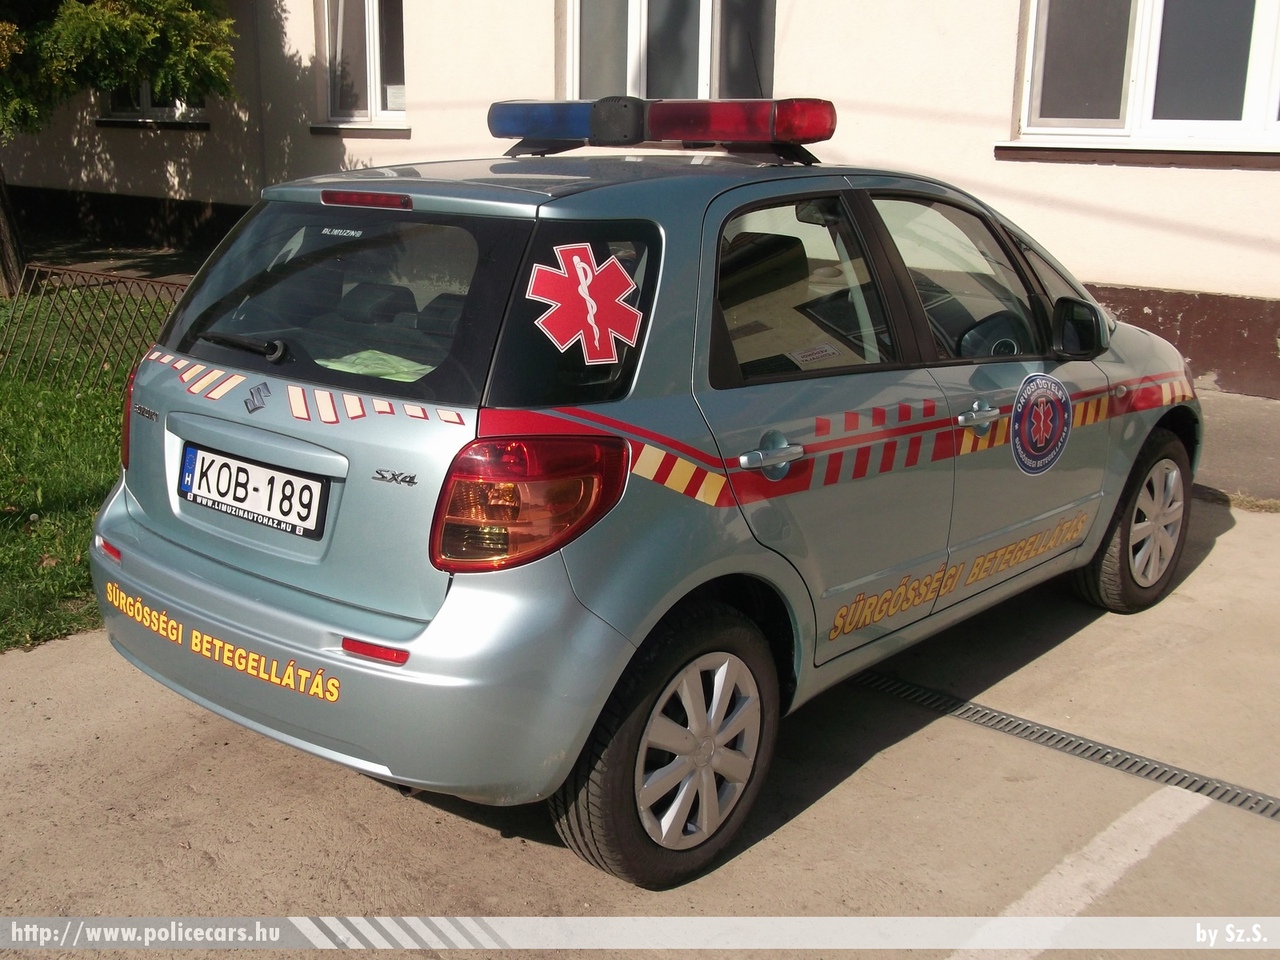 Suzuki SX4, Országos Orvosi Ügyelet Nonprofit Kft., fotó: Sz.S.
Keywords: magyar Magyarország mentő mentőautó Hungary hungarian ambulance KOB-189